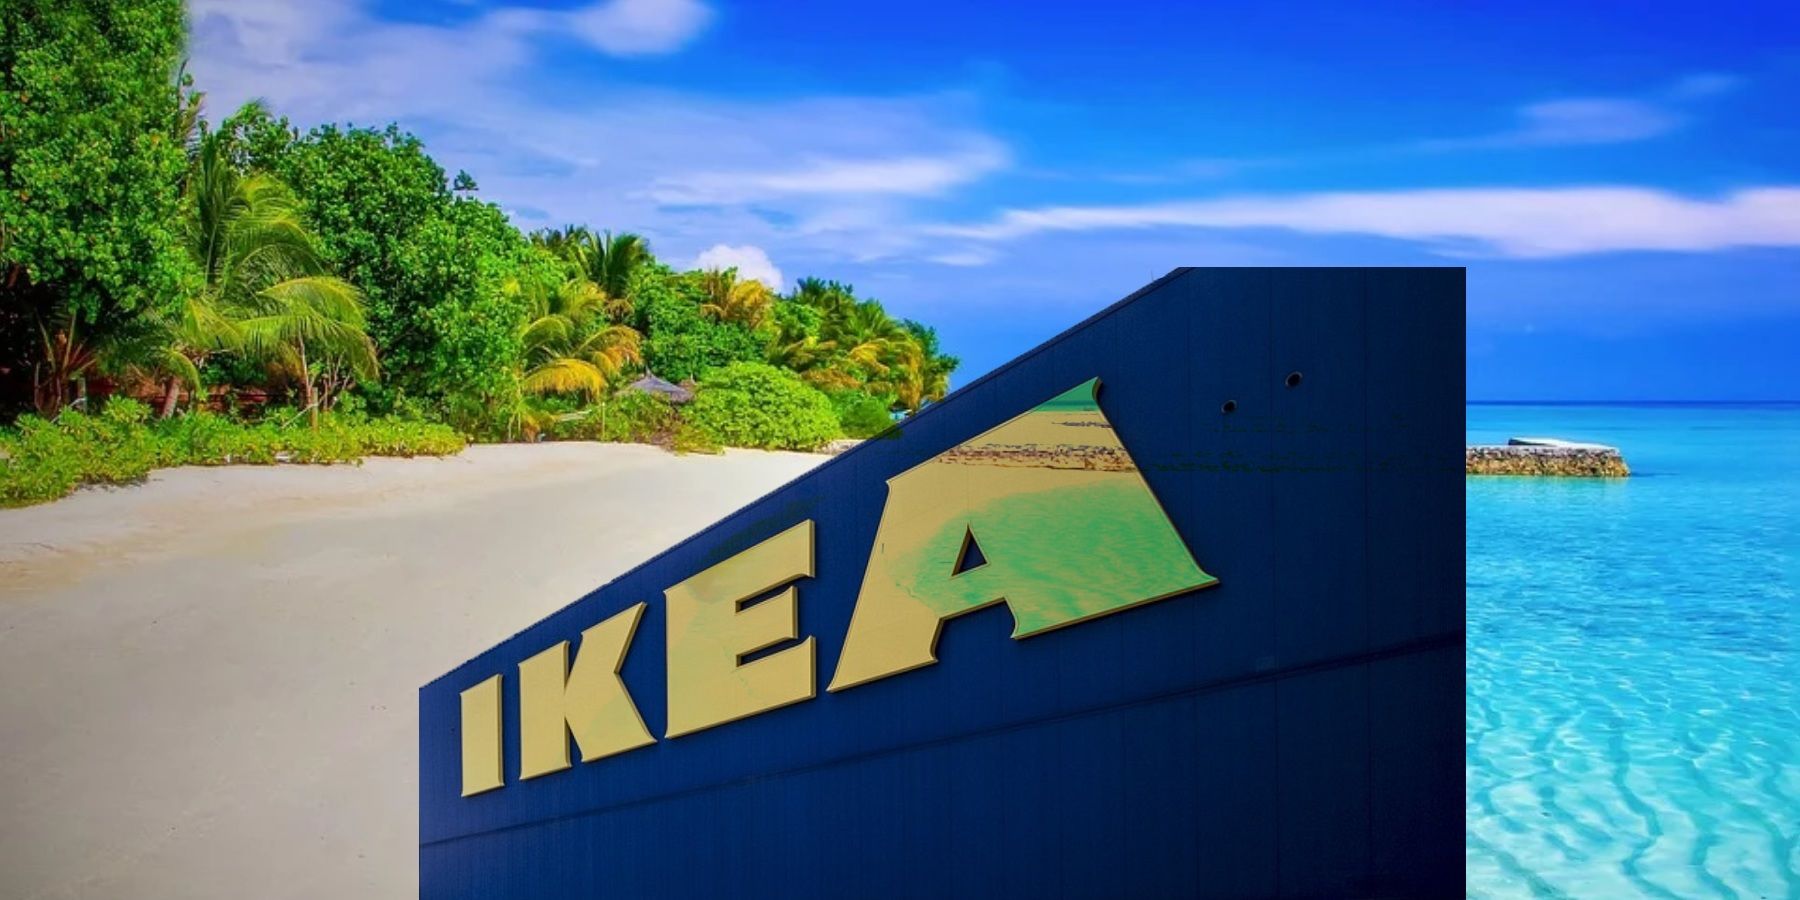 IKEA fake vacation